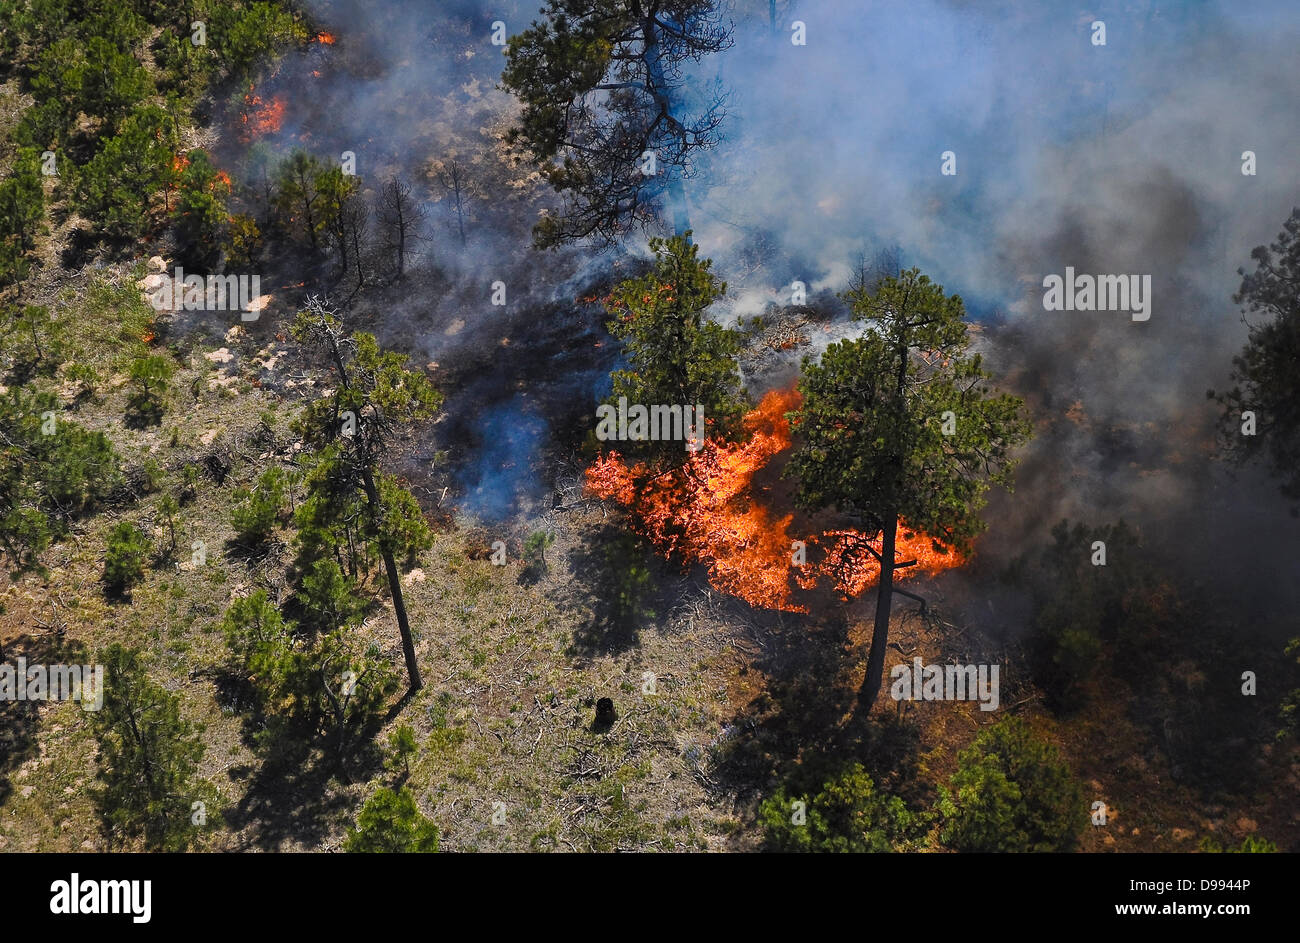 Vue aérienne de la fumée et du feu autour d'une maison causé par l'incendie de forêt noire le 12 juin 2013 près de Colorado Spring Co., l'incendie a tué deux personnes et détruit plus de 500 maisons de plus en plus destructrices de l'incendie dans le Colorado. Banque D'Images